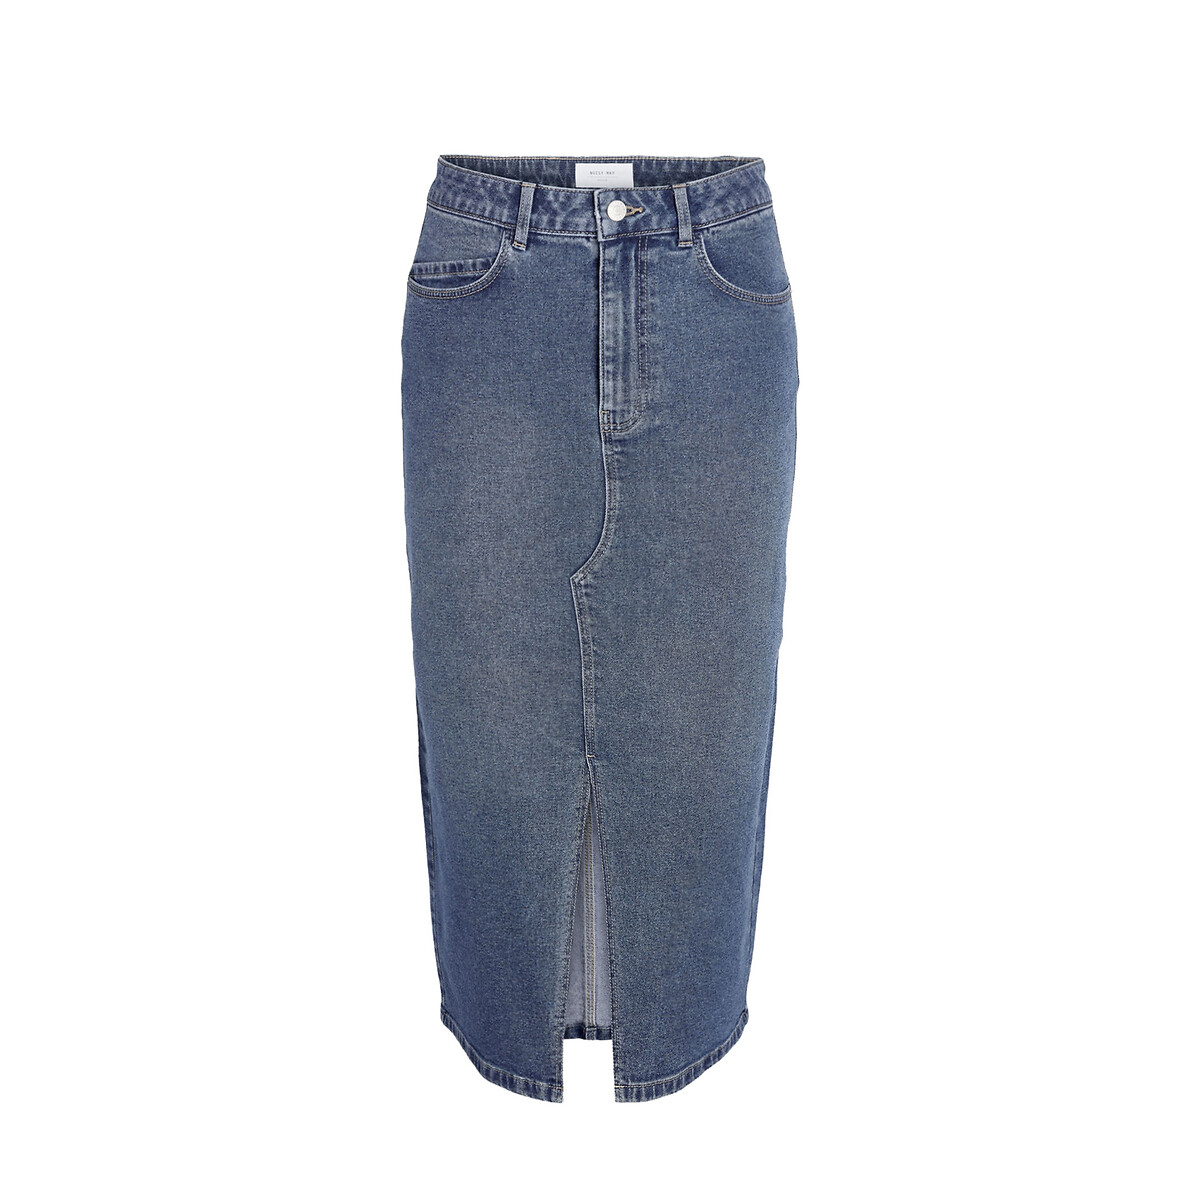 Юбка-миди из джинсовой ткани L синий юбка длинная из джинсовой ткани m синий